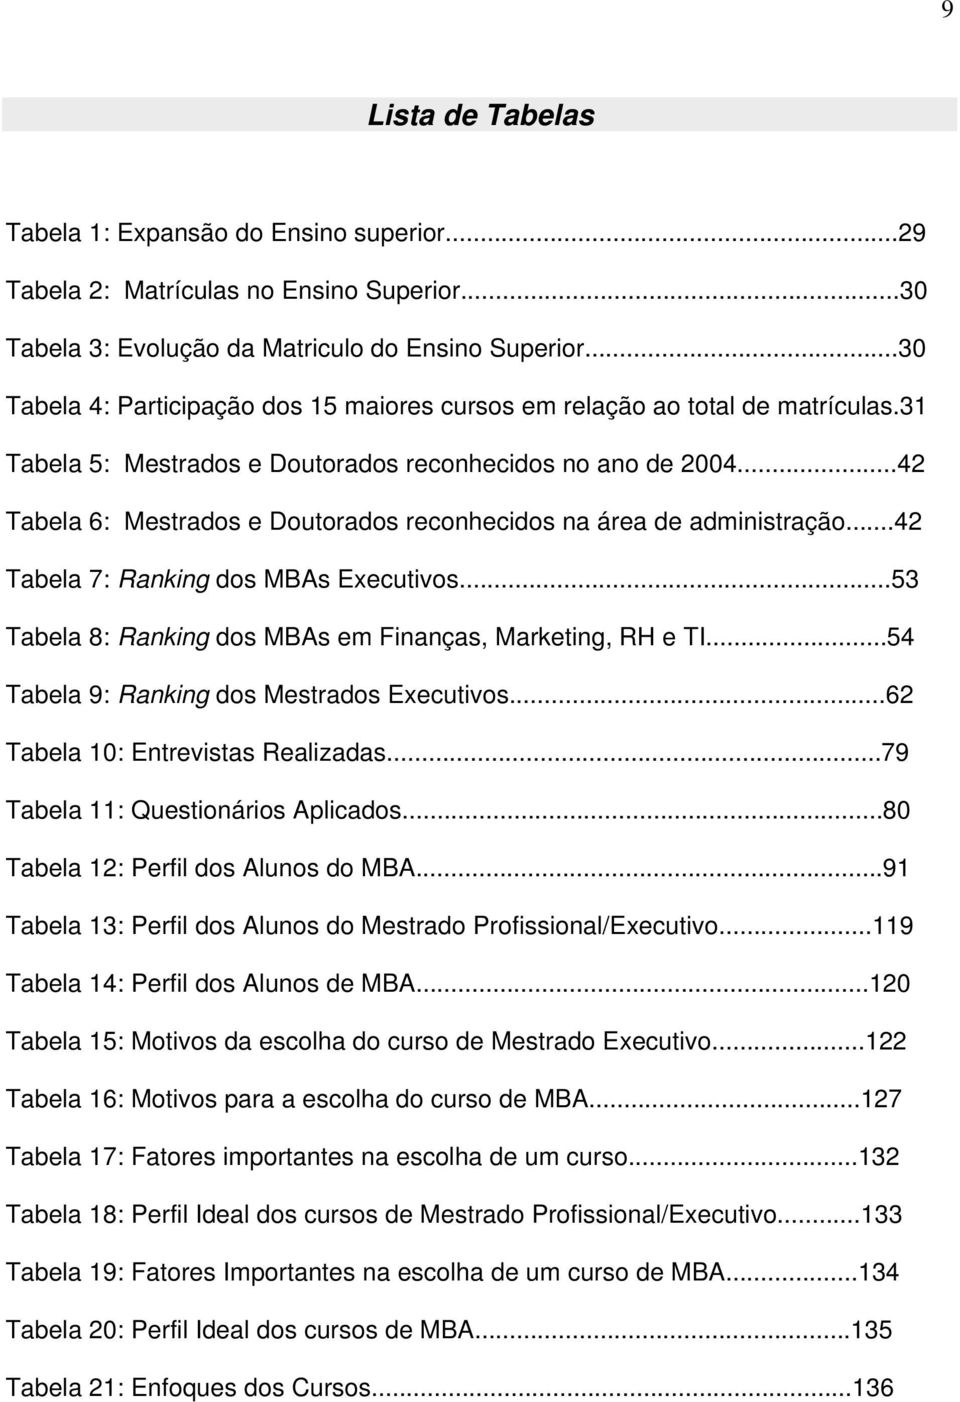 ..42 Tabela 6: Mestrados e Doutorados reconhecidos na área de administração...42 Tabela 7: Ranking dos MBAs Executivos...53 Tabela 8: Ranking dos MBAs em Finanças, Marketing, RH e TI.